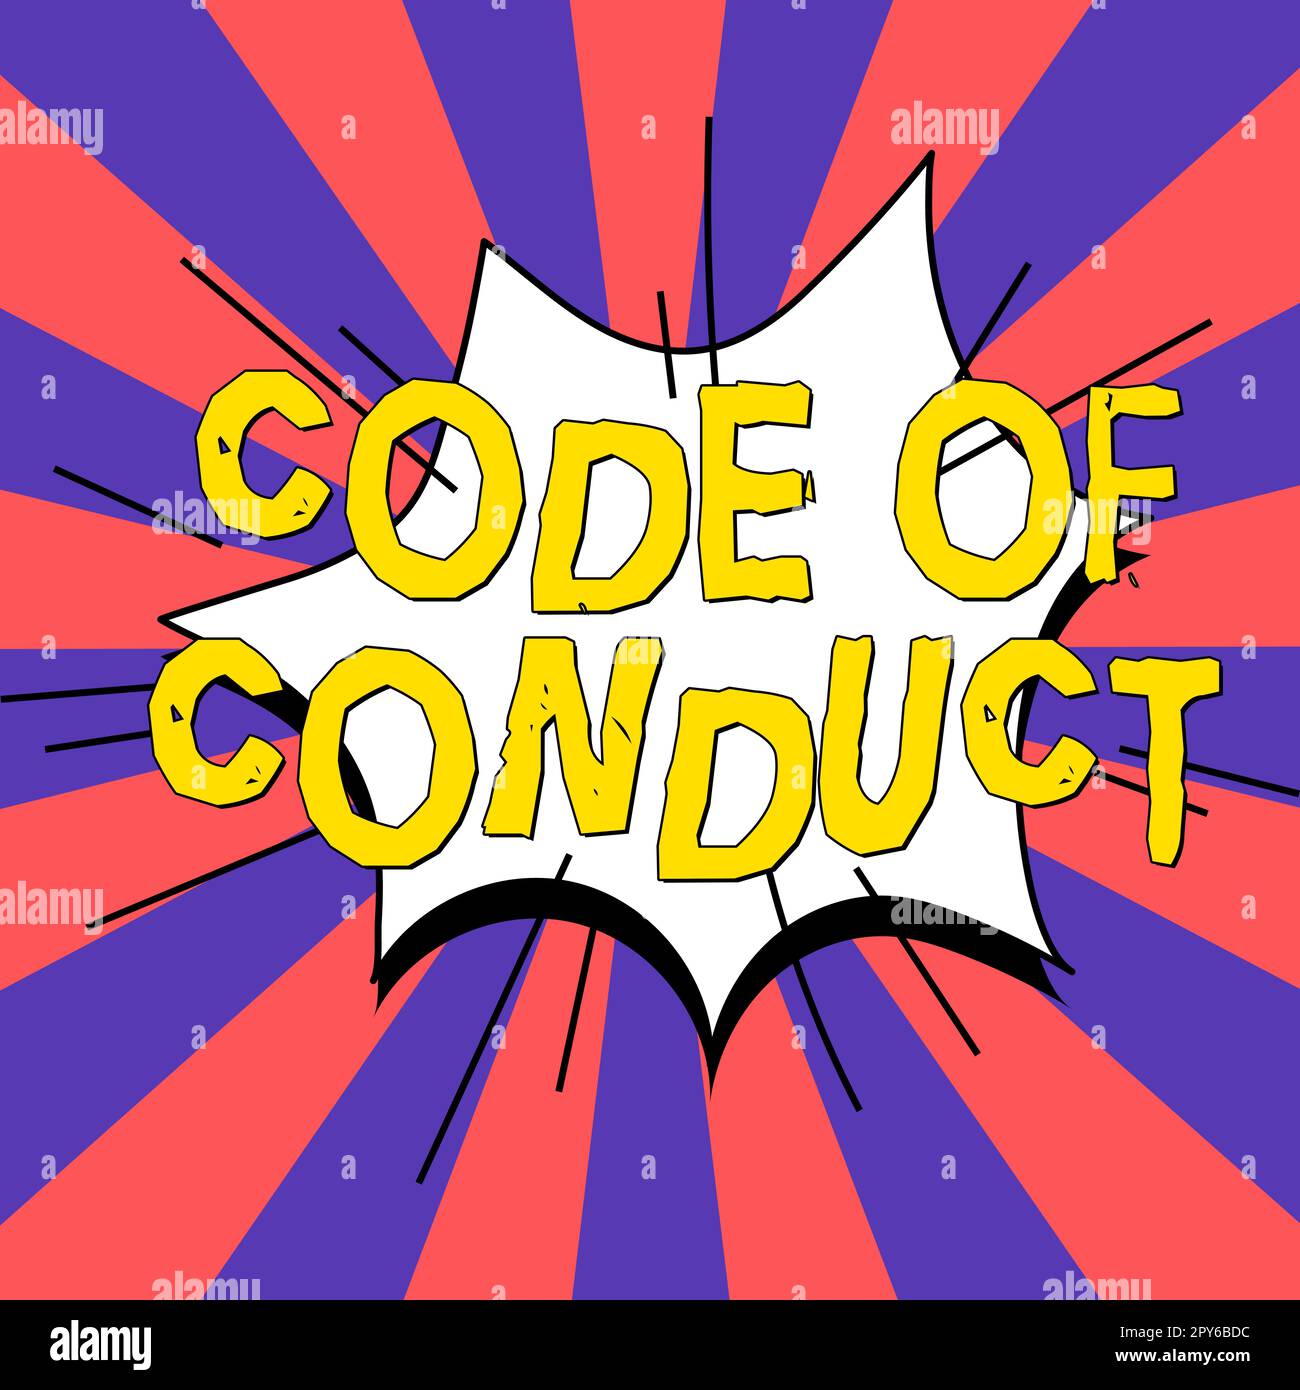 Scrittura di testo Codice di condotta. Concetto di Internet regole etiche codici morali principi etici rispetto dei valori Foto Stock